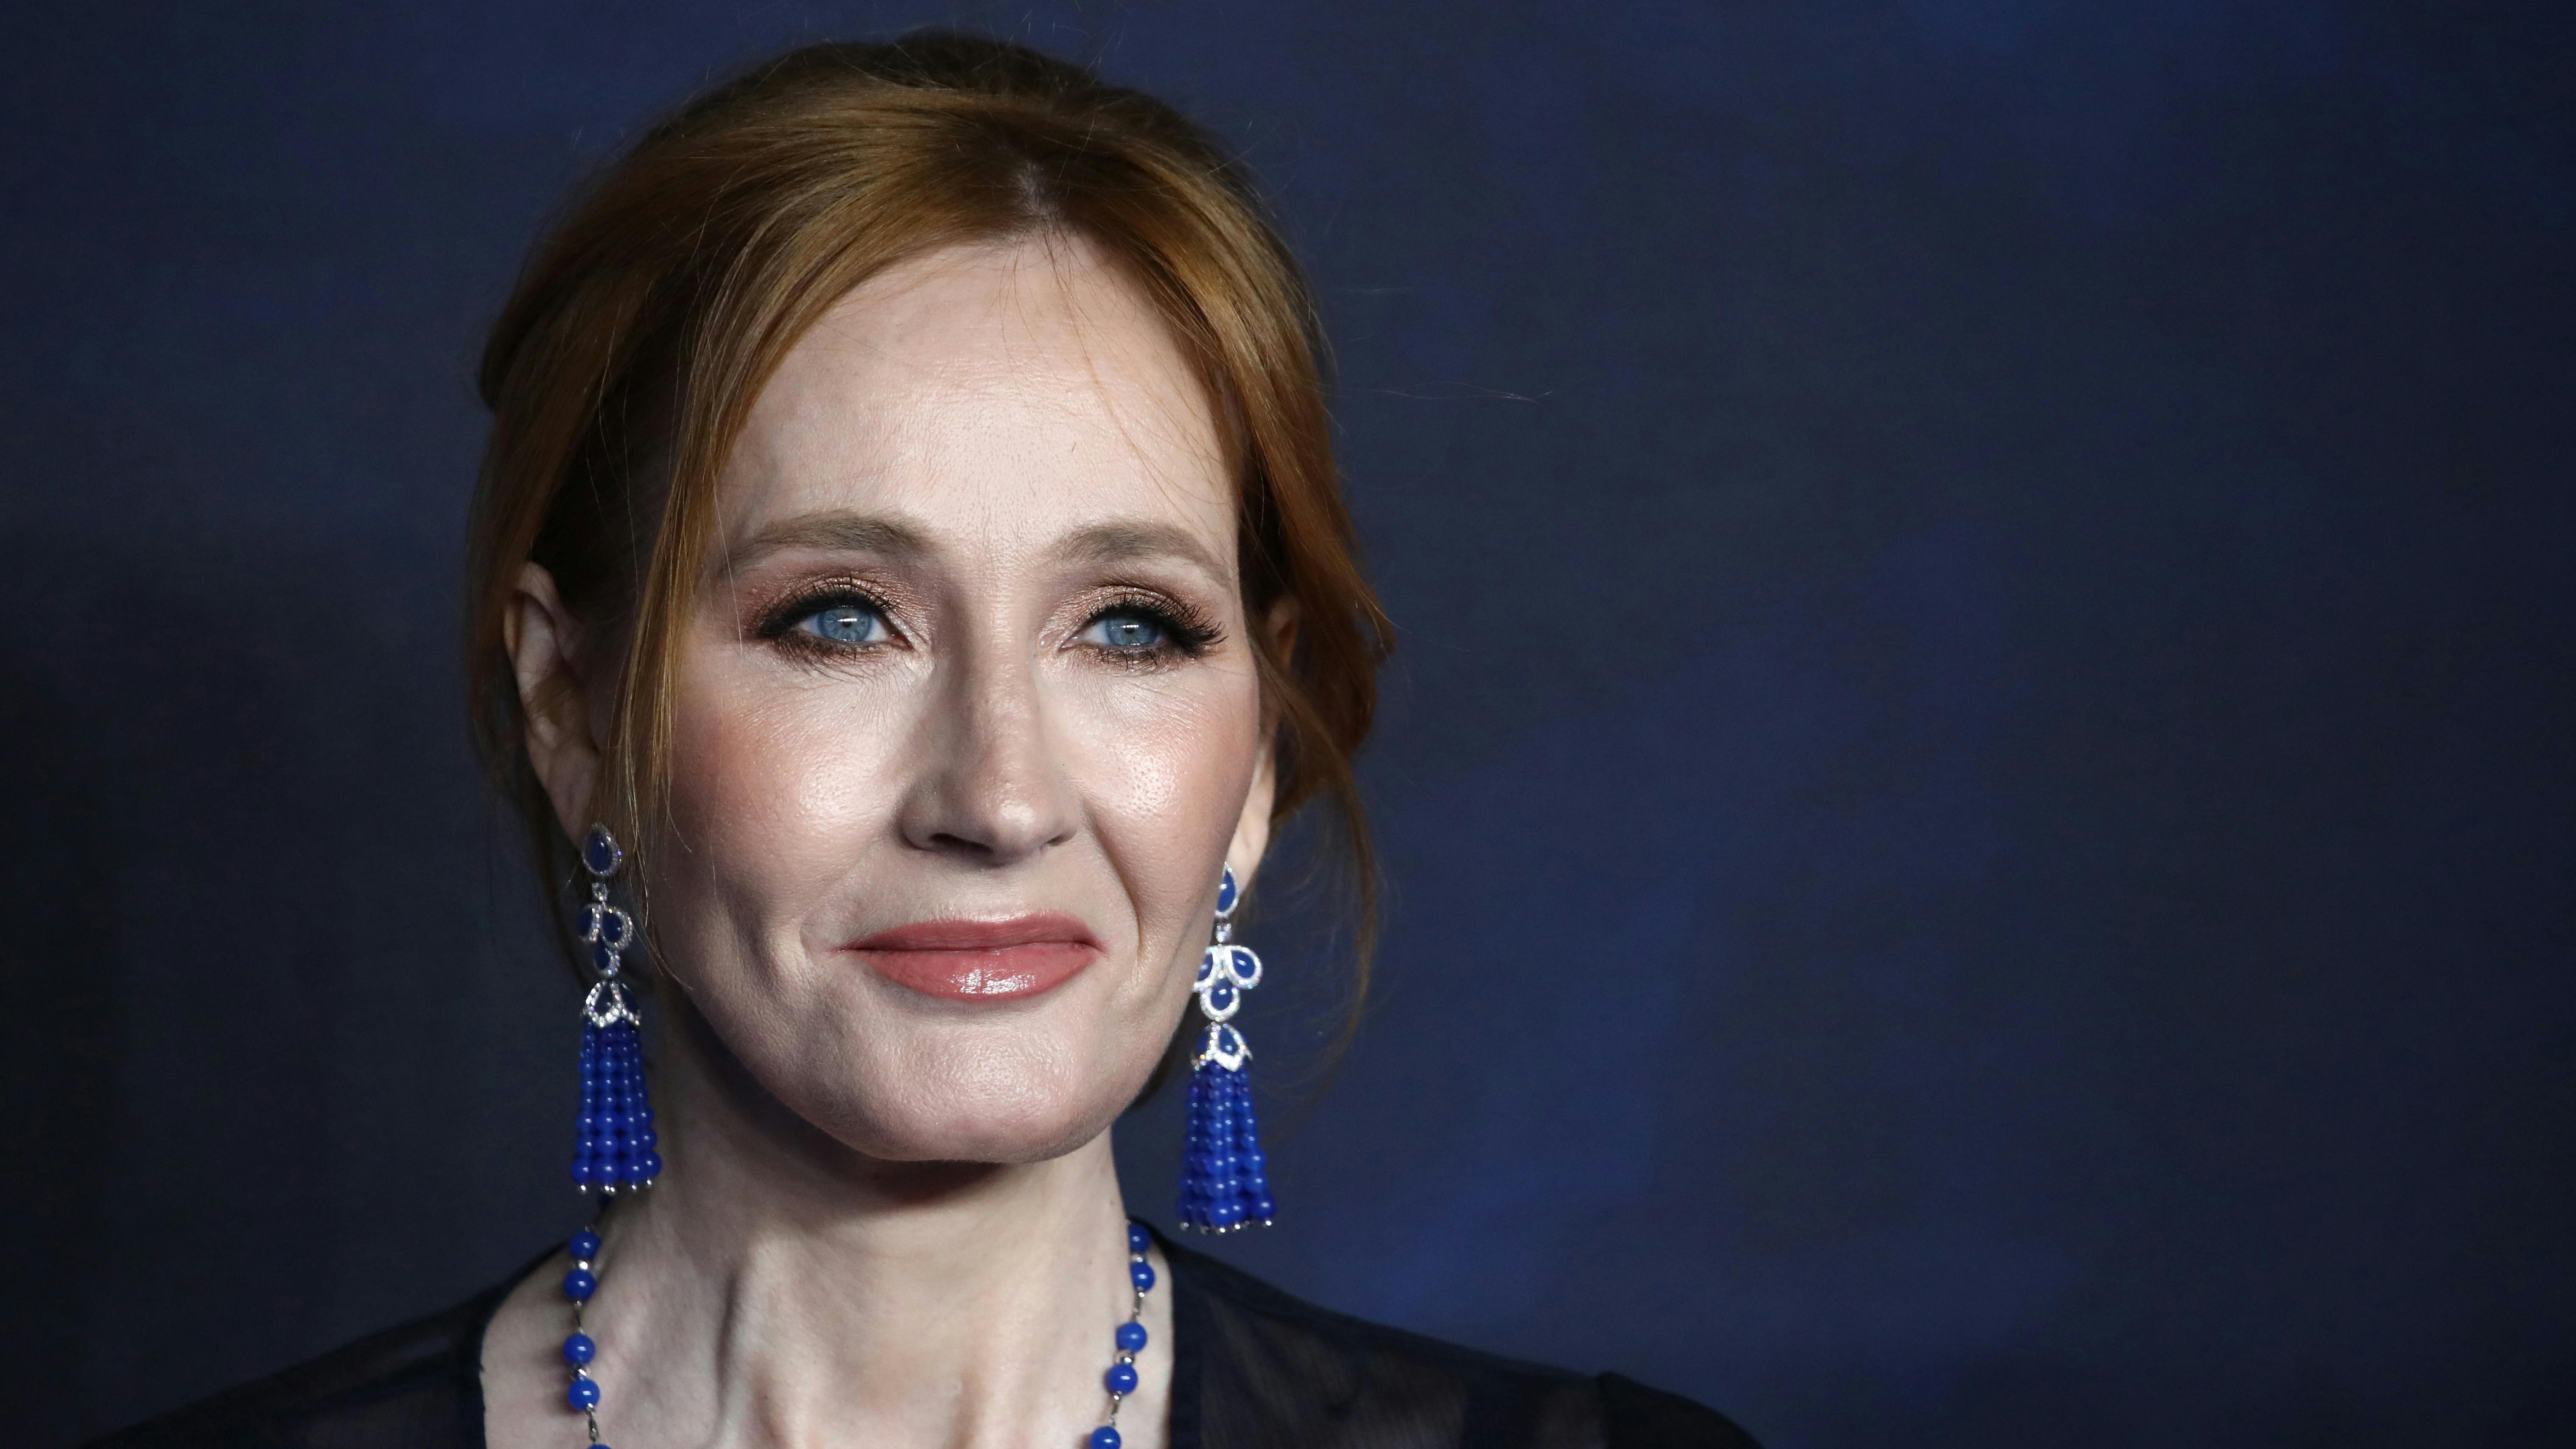 Wir sehen die Autorin Joanne K. Rowling im Portrait, lächelnd, vor einer dunkelblauen Wand. 